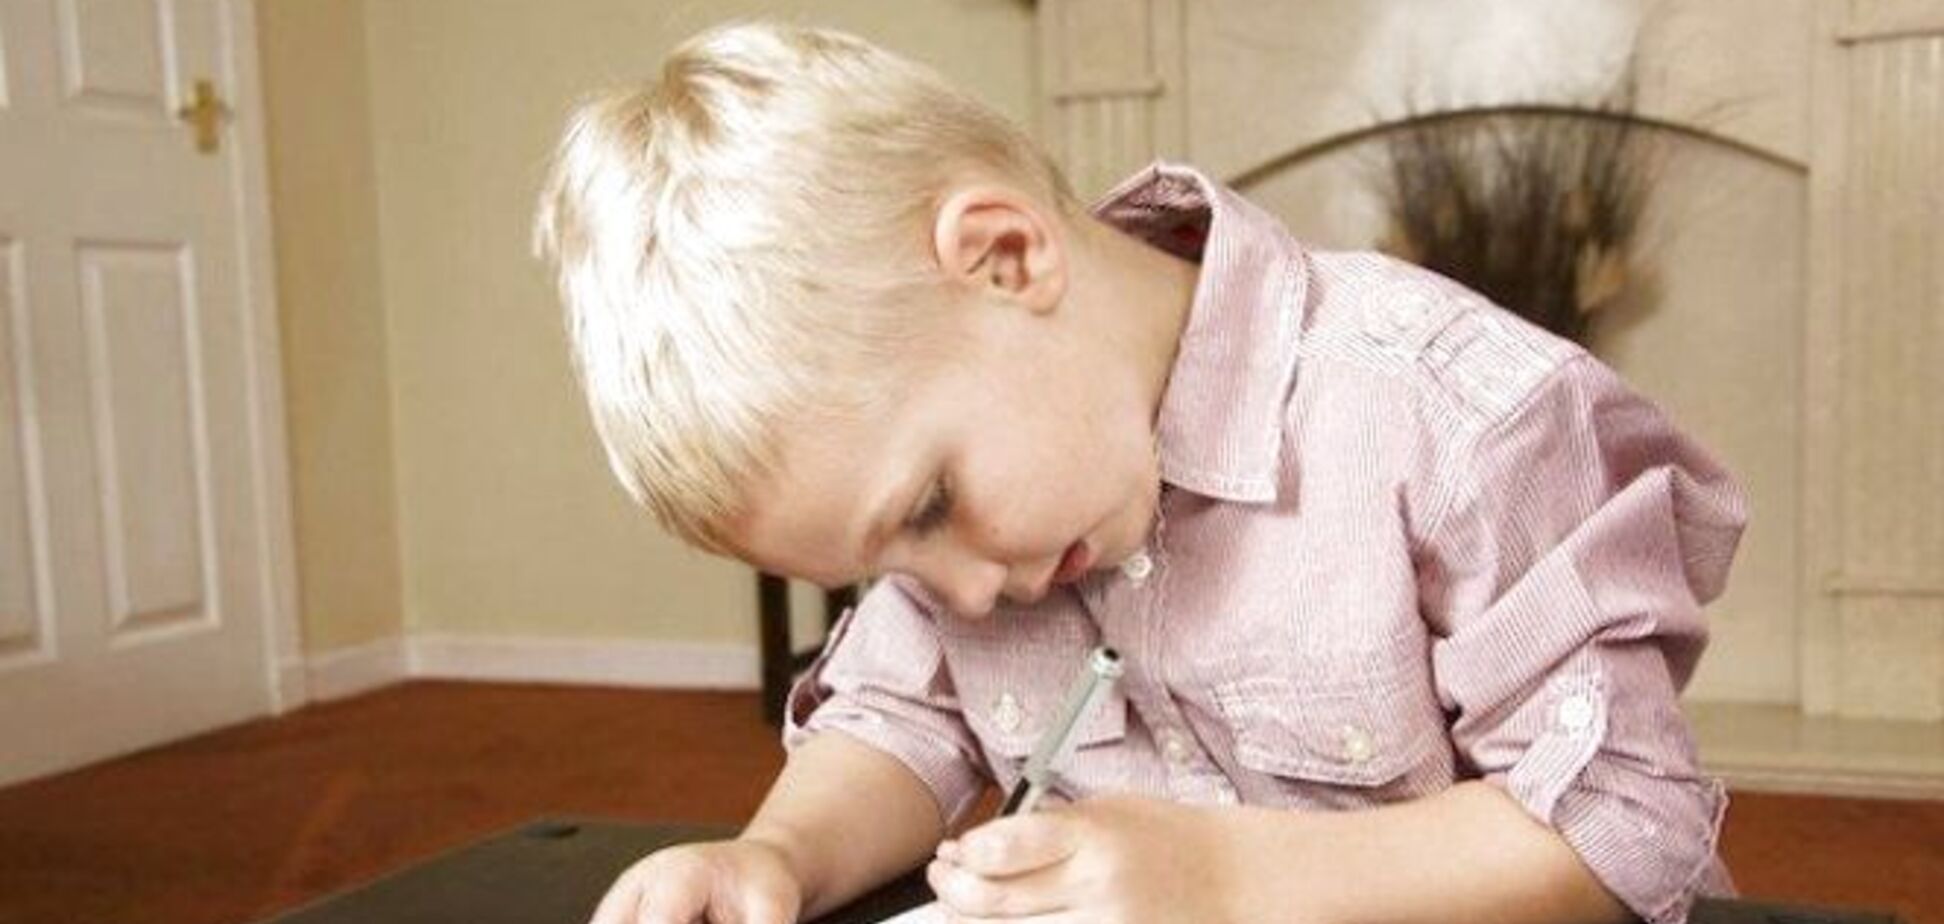 Правша или левша: стало известно, как определить рабочую руку у ребенка